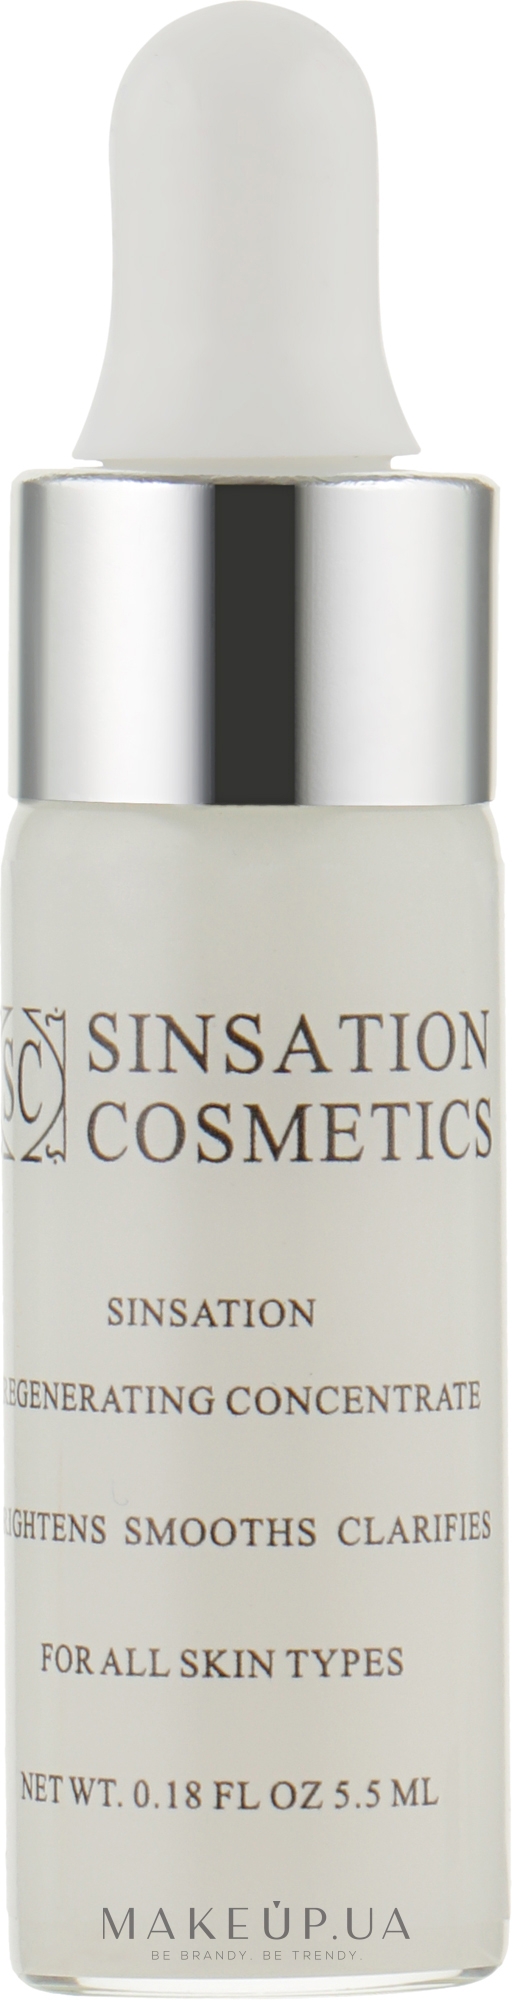 Сыворотка для лица - Sinsation Cosmetics Sinsation Regenerating Concentrate (мини) — фото 5.5ml